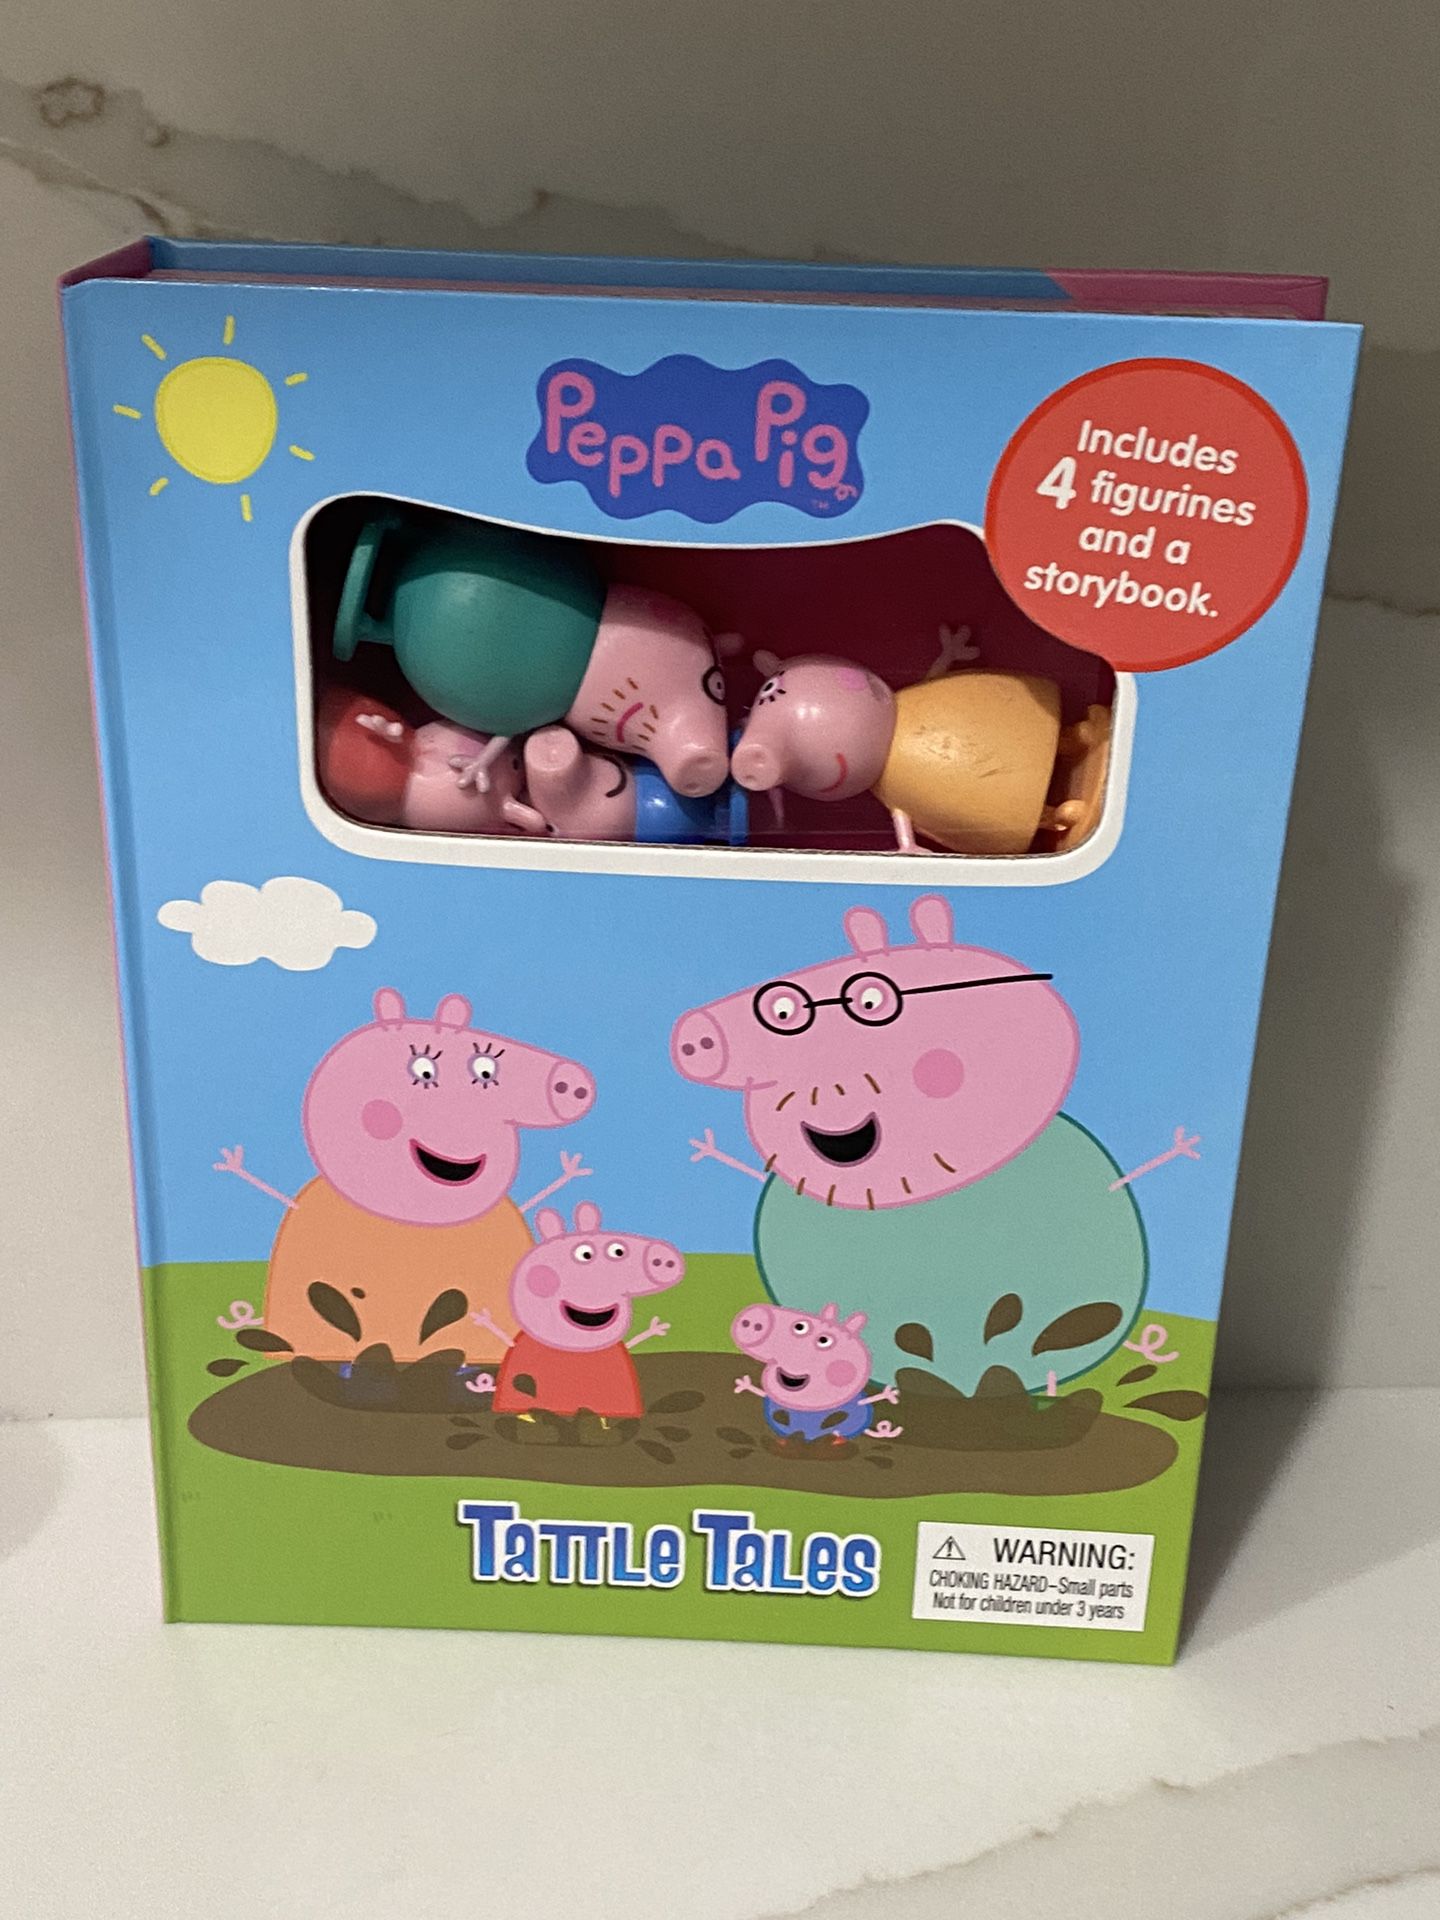 Peppa Pig Tattle Tales NEW 